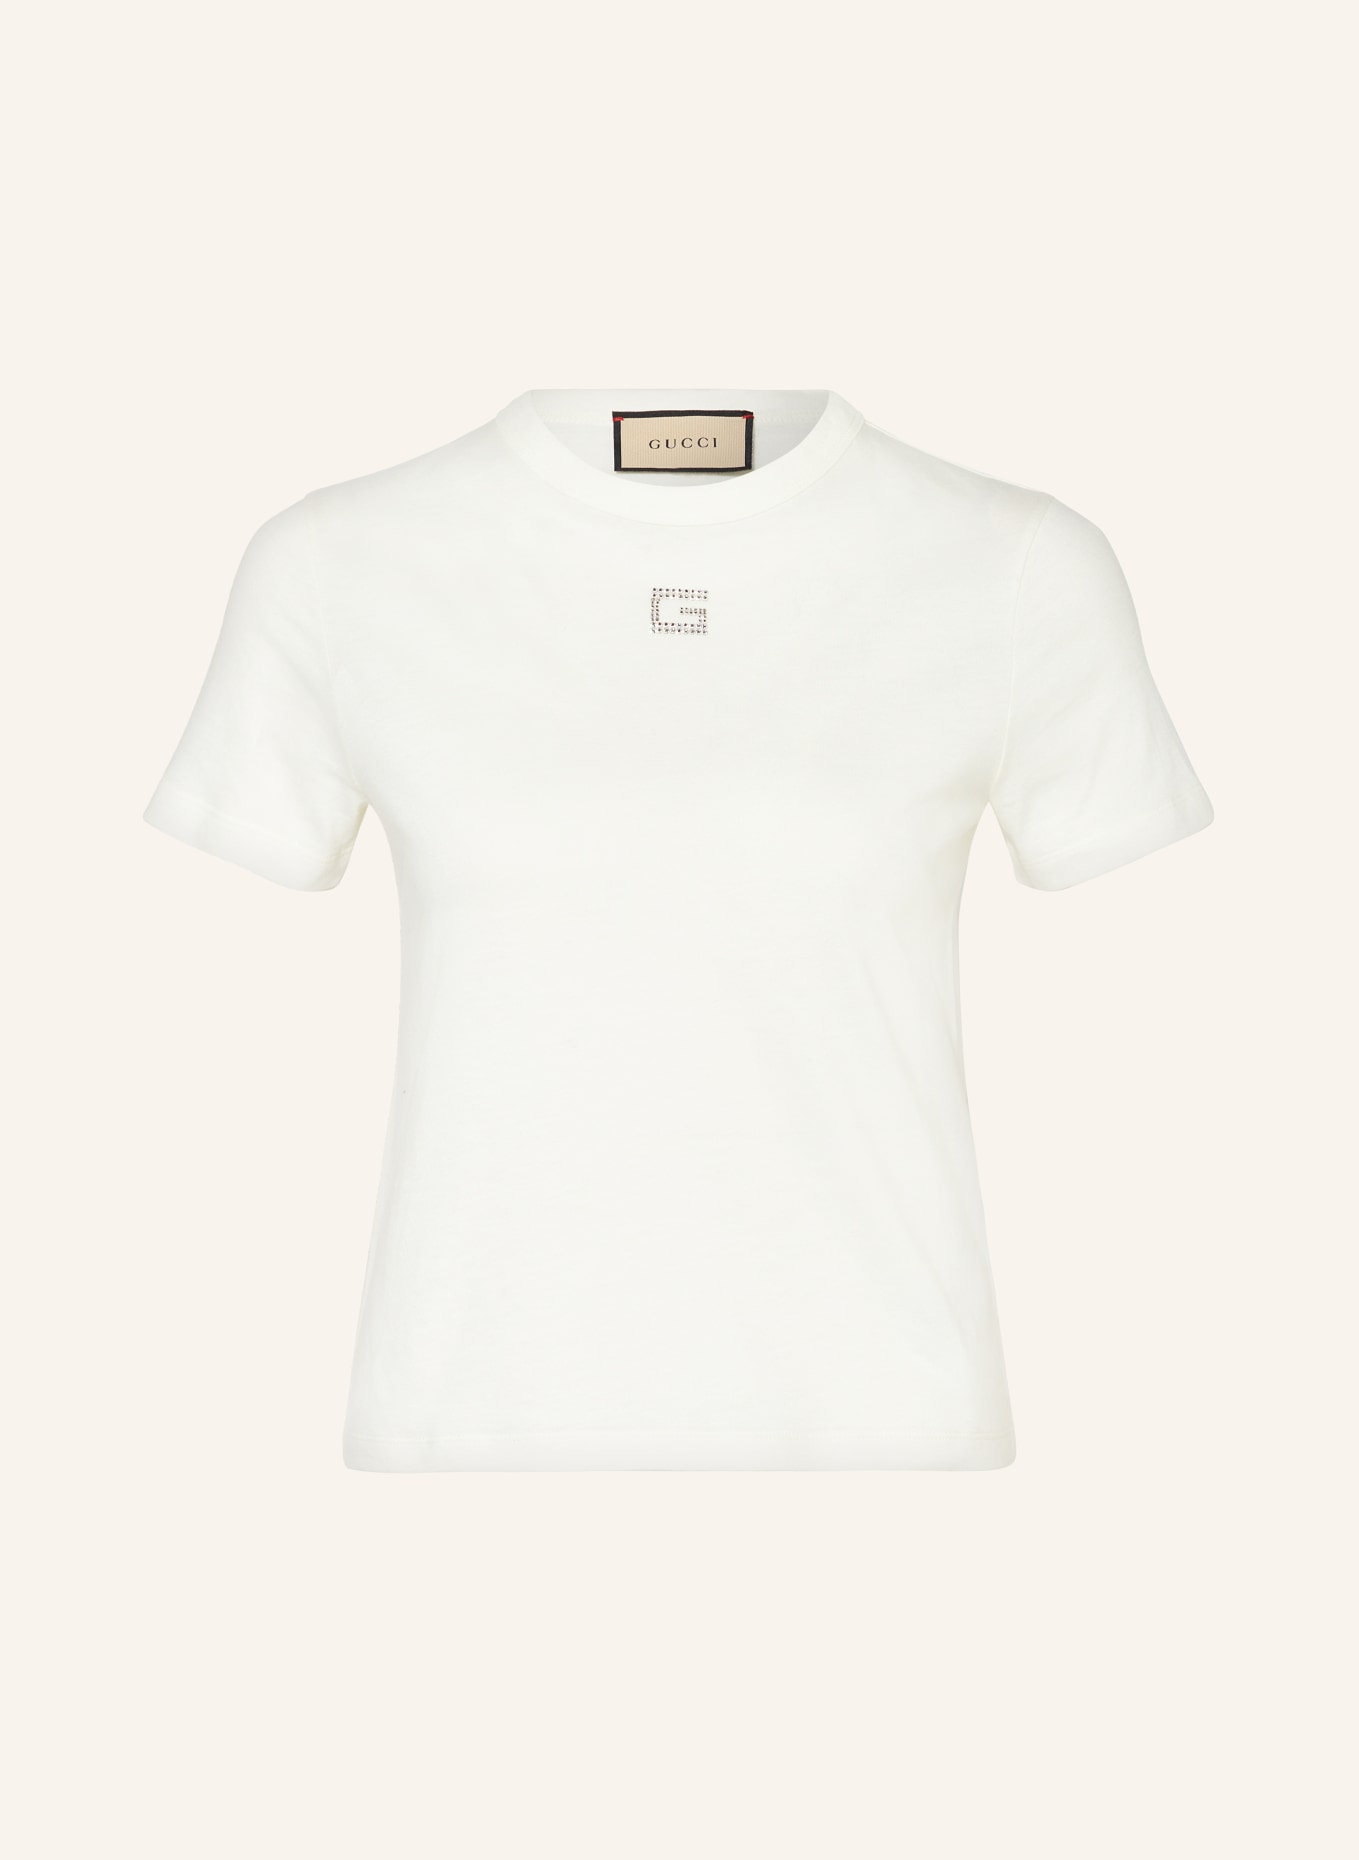 GUCCI T-Shirt mit Schmucksteinen, Farbe: WEISS (Bild 1)